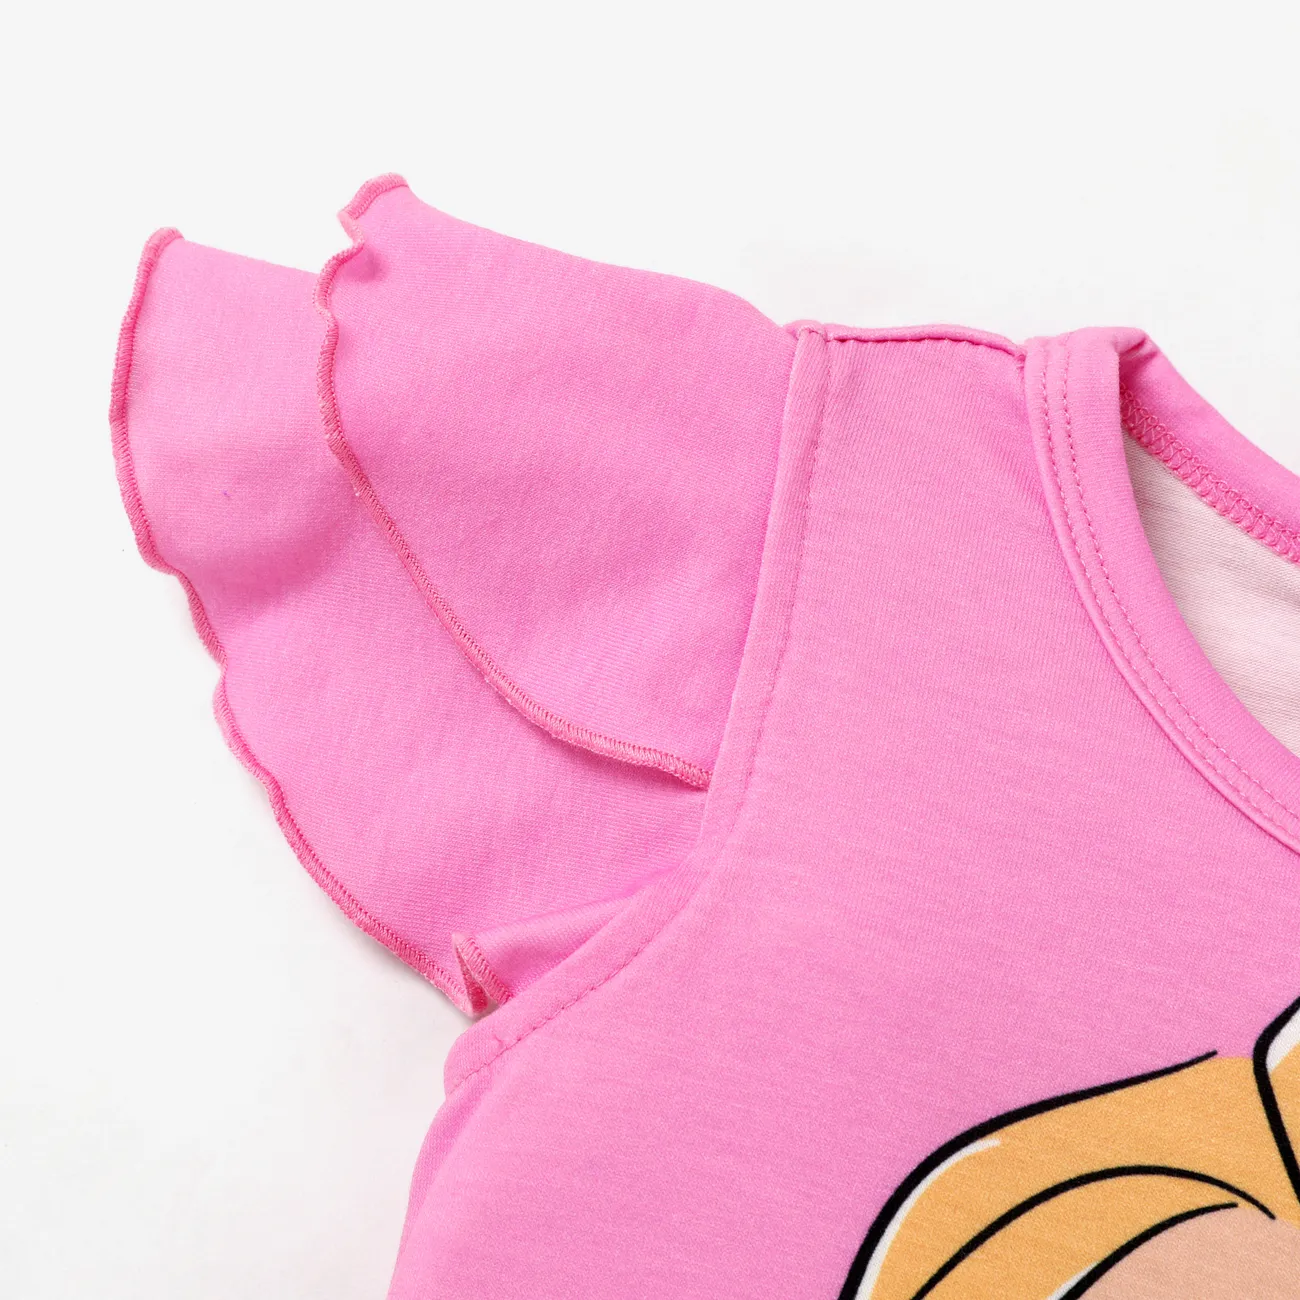 Disney Princess Toddler Girl Naia™ Character Print Ruffled Short-sleeve Tee Roseo big image 1